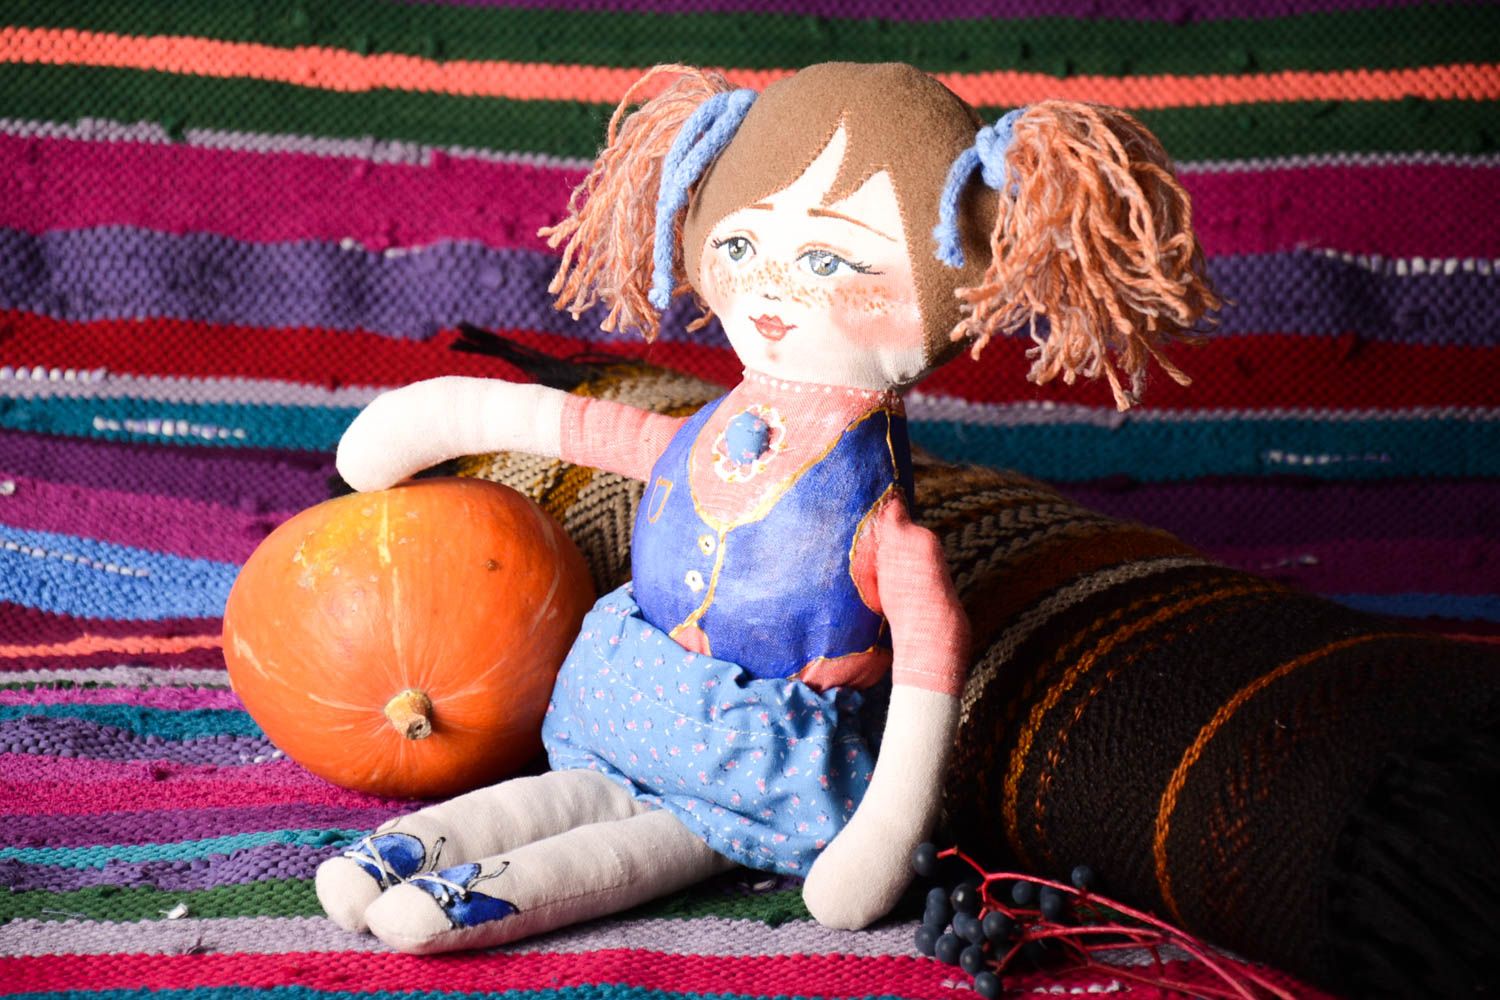 Handmade soft doll girl doll designer toys for children gifts for kids photo 1